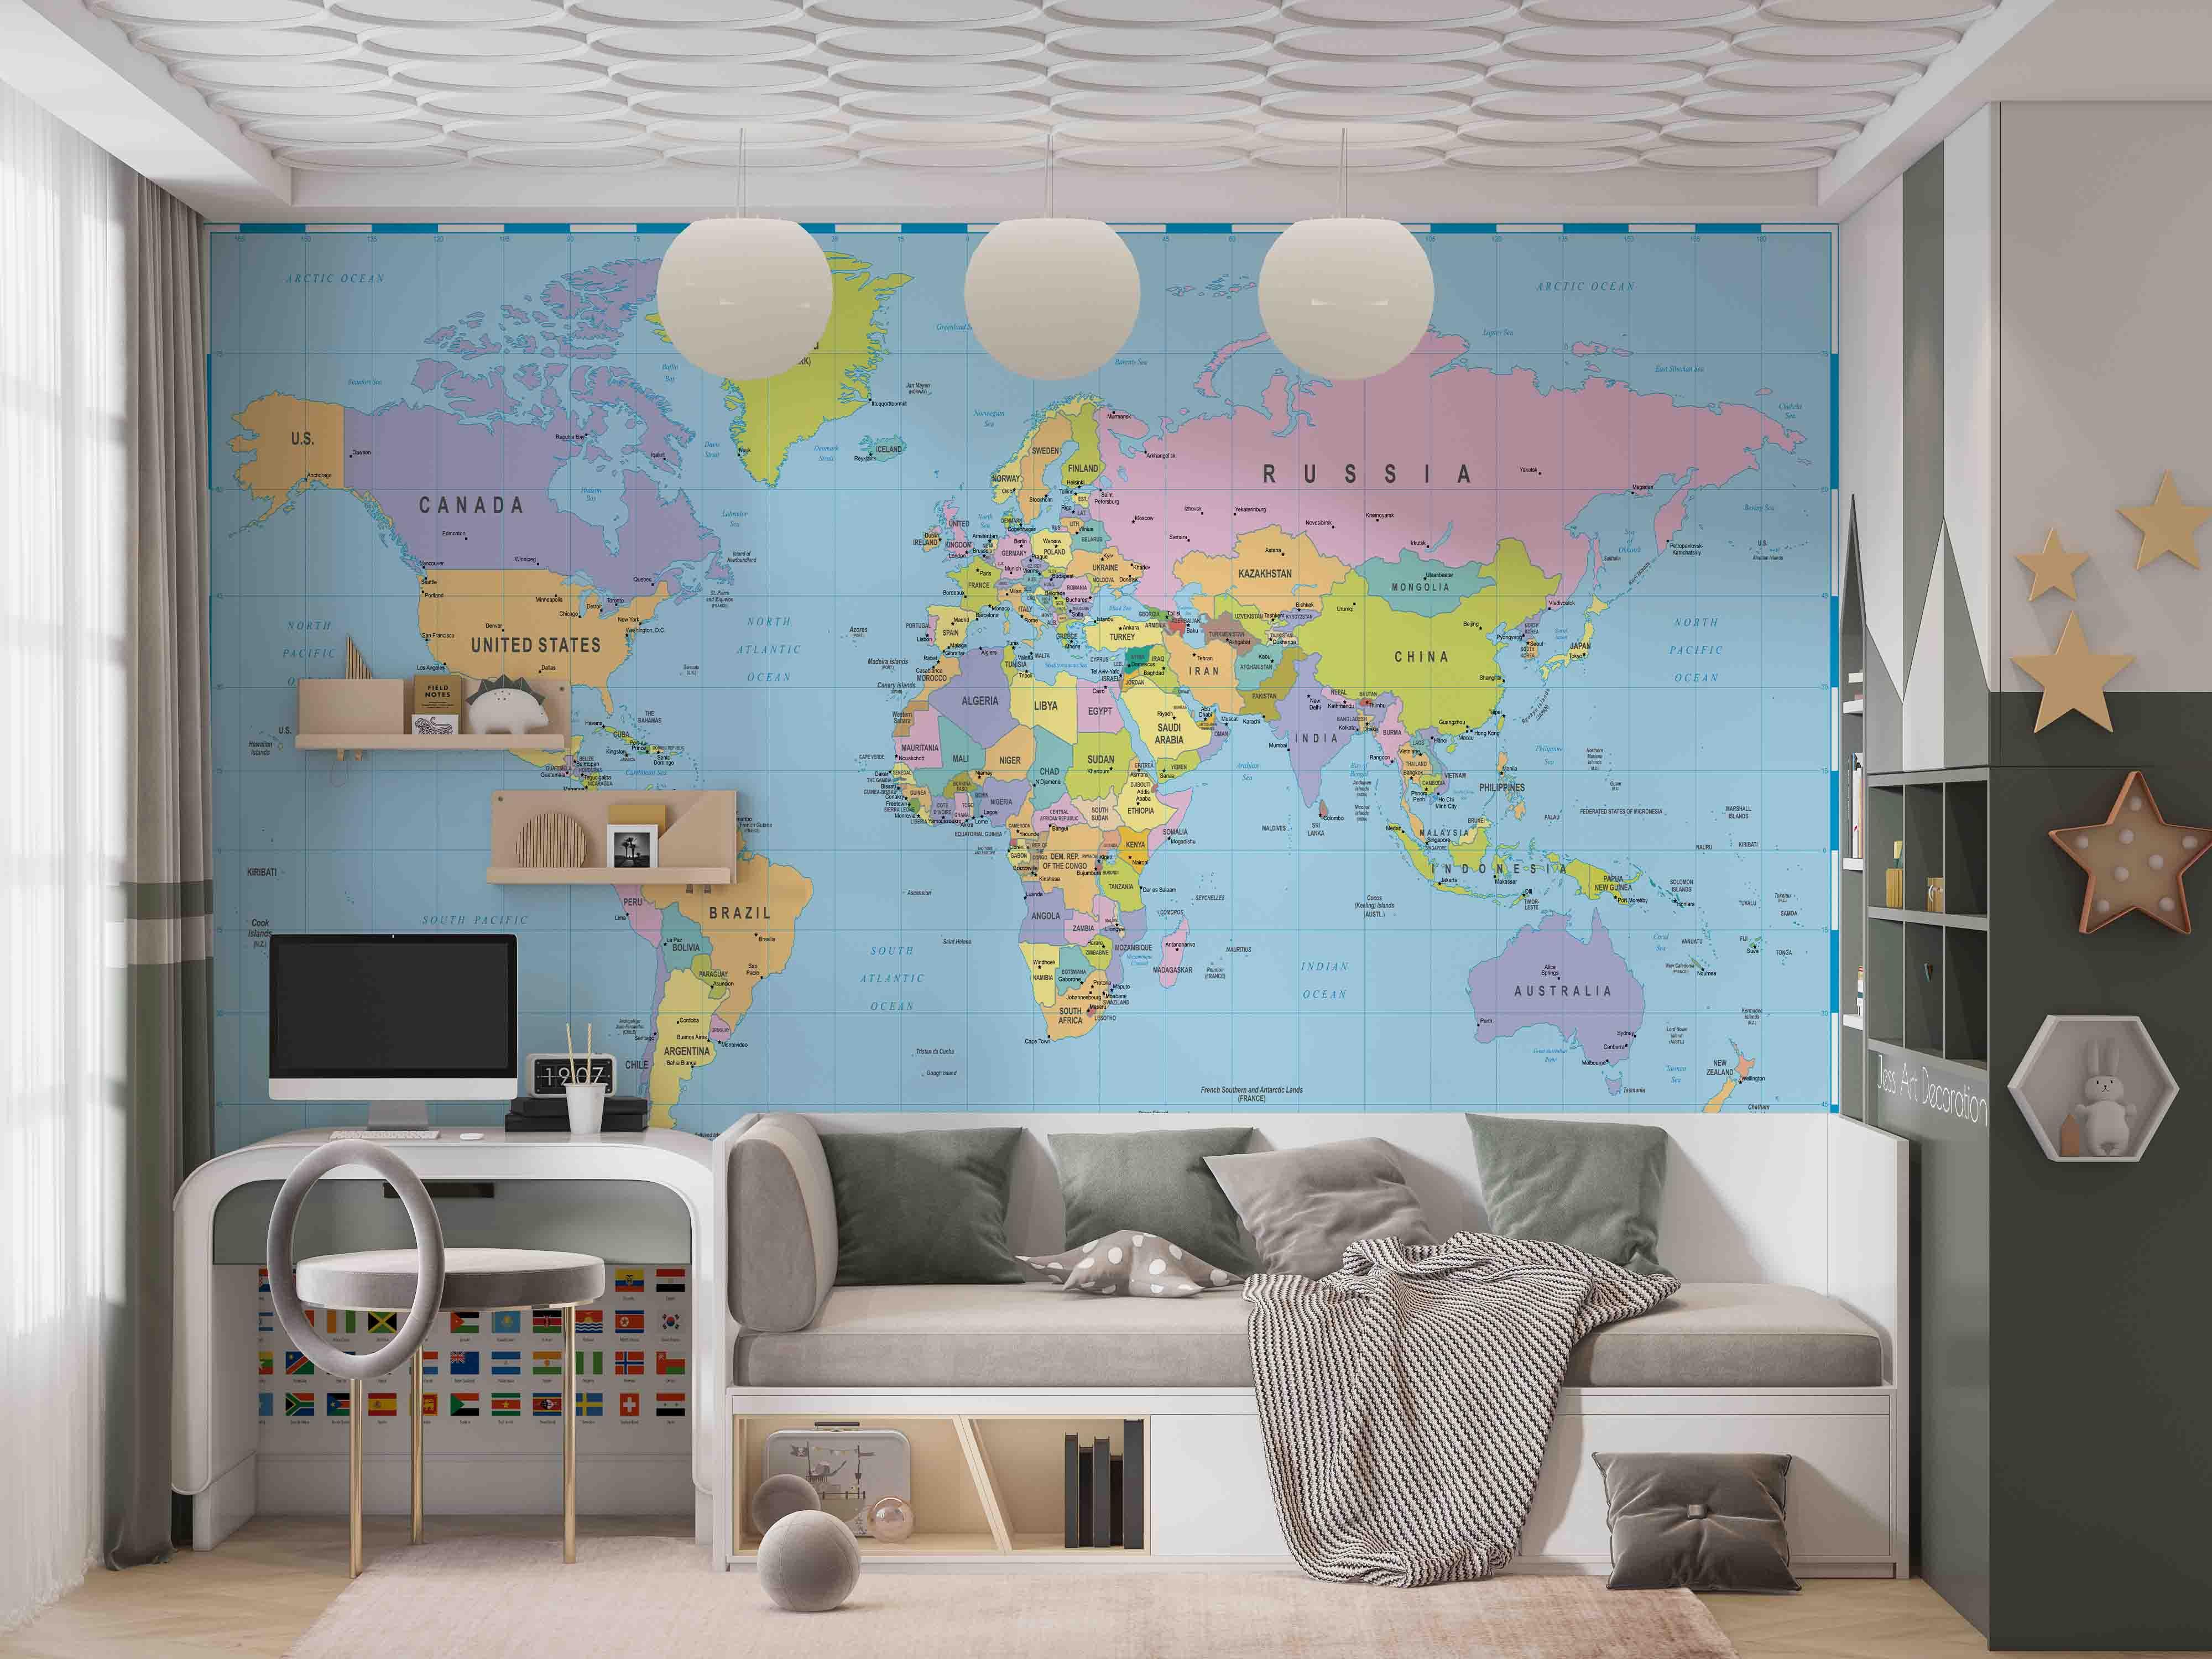 3D World Map Wall Mural Wallpaper GD 2687- Jess Art Decoration